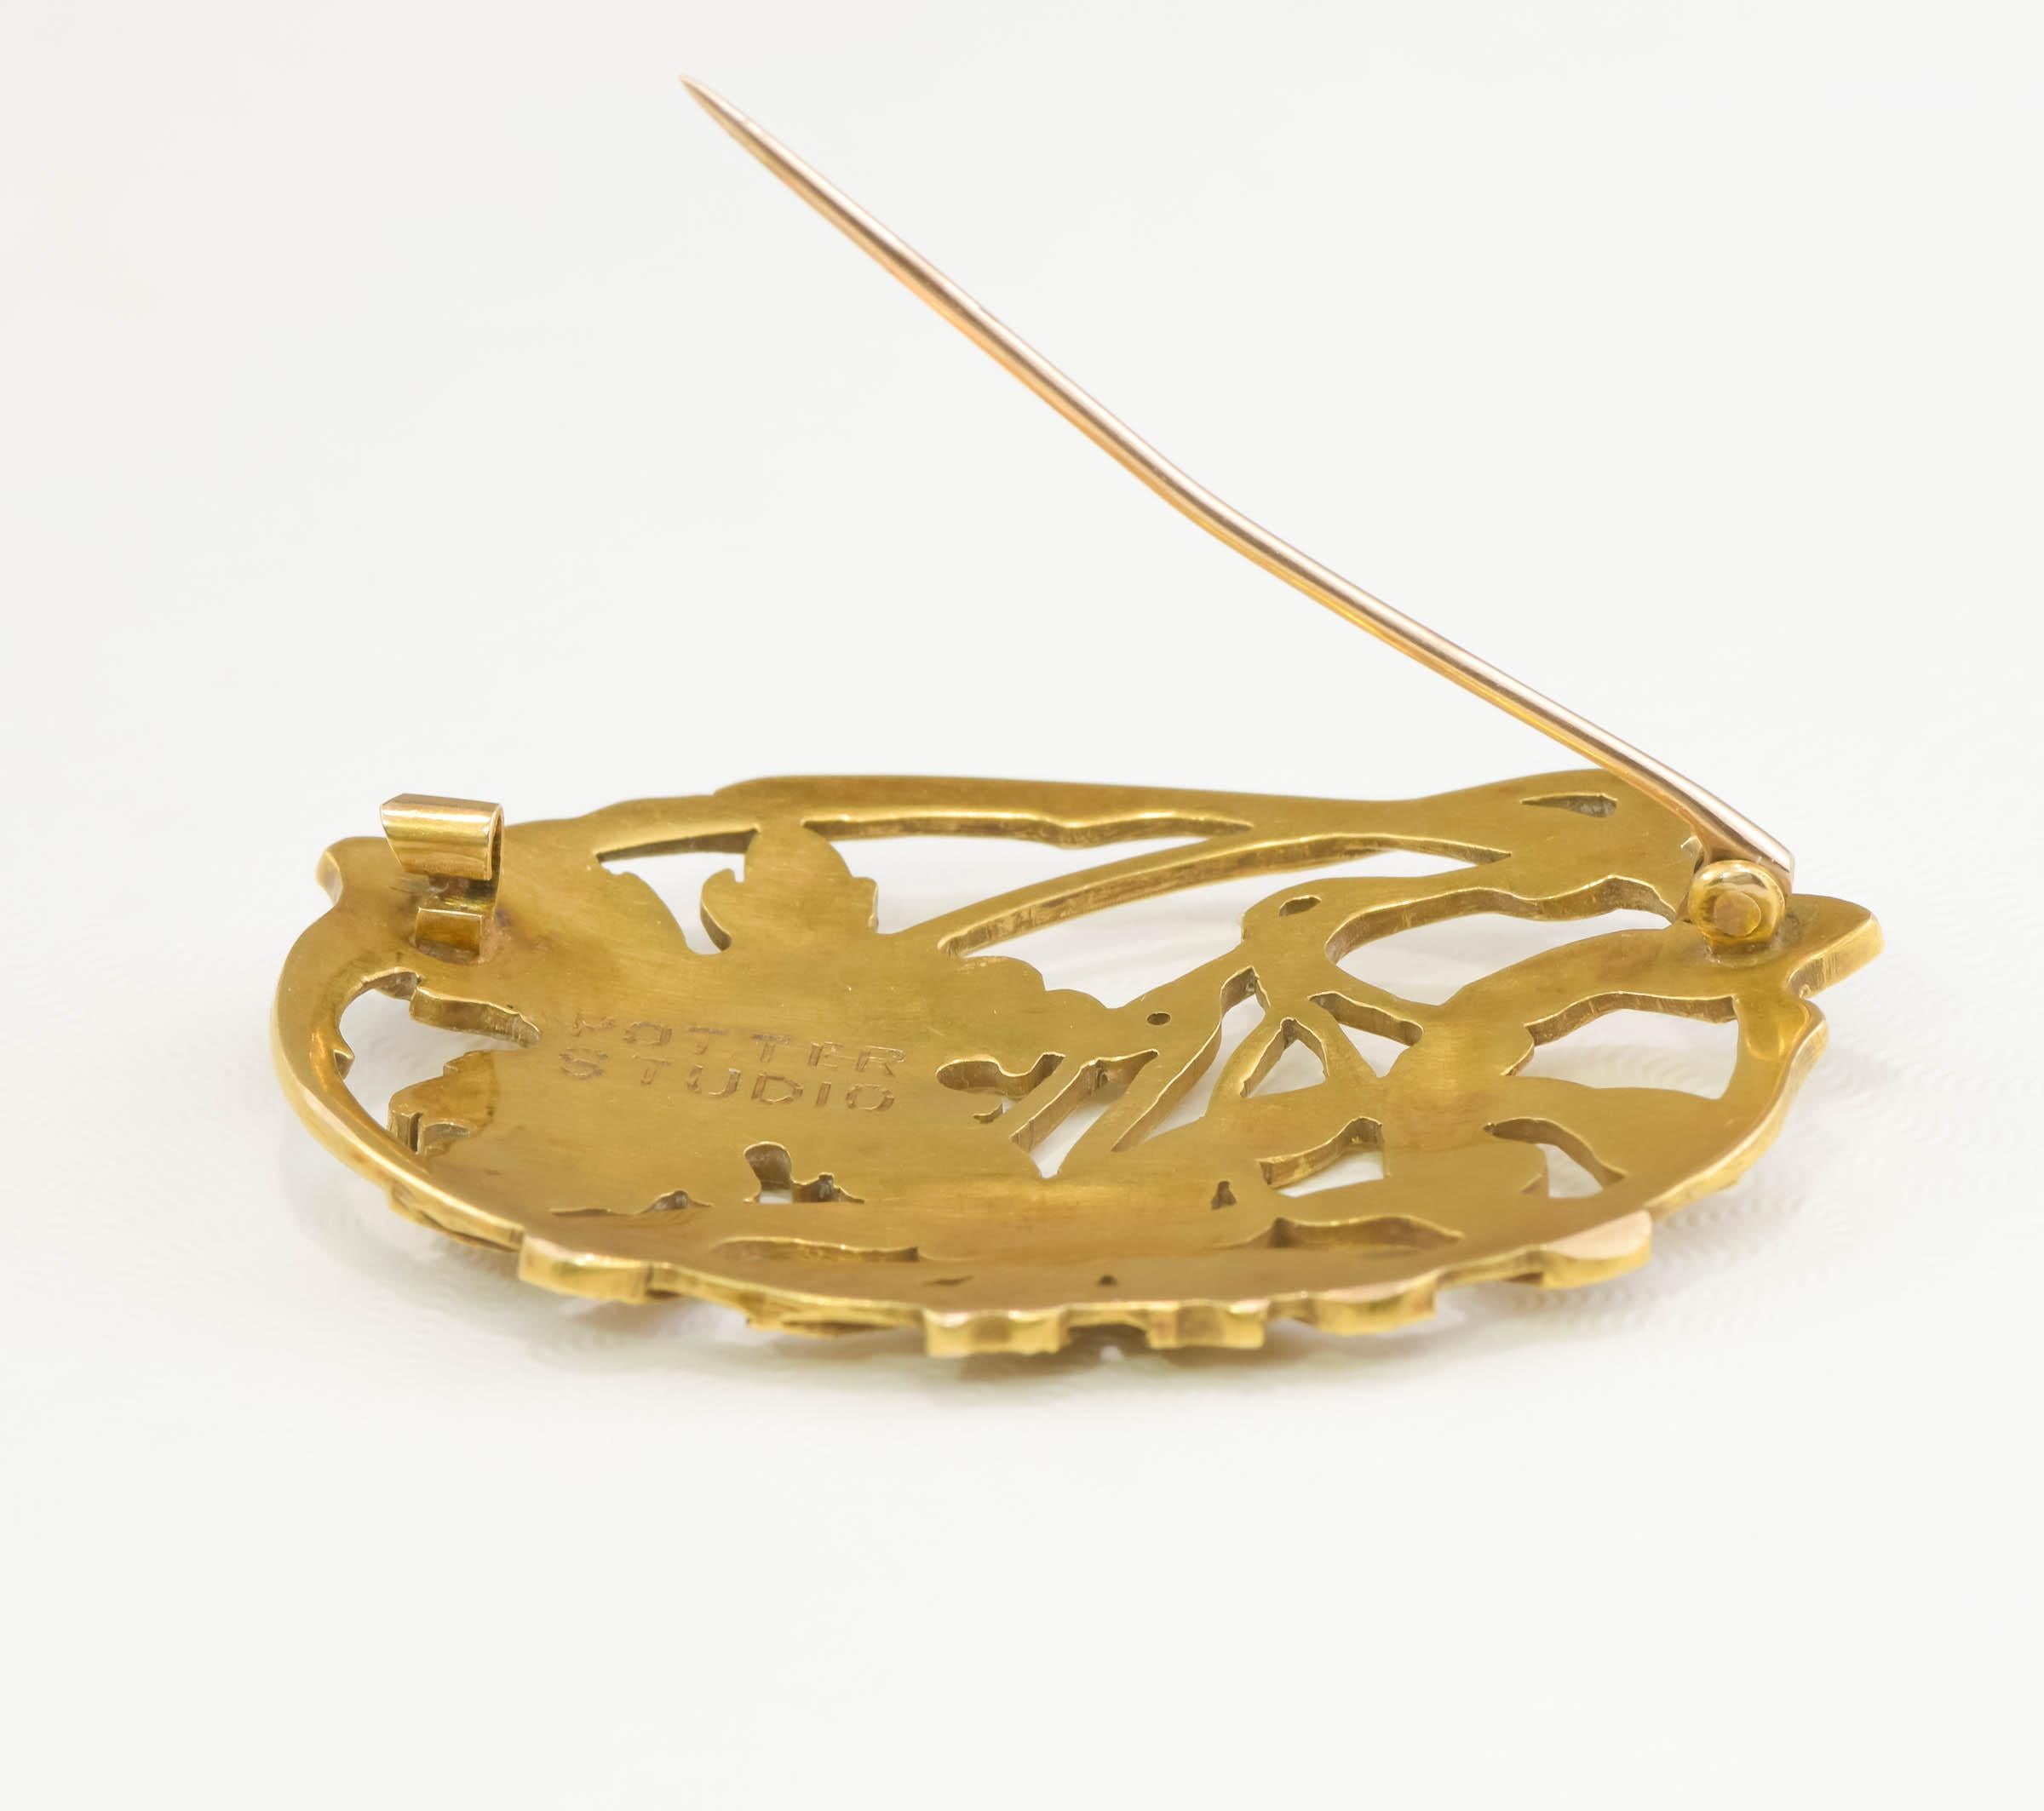 Antique Arts & Crafts 18K Gold Brooch by Potter Studio - Large Foliate Design 3